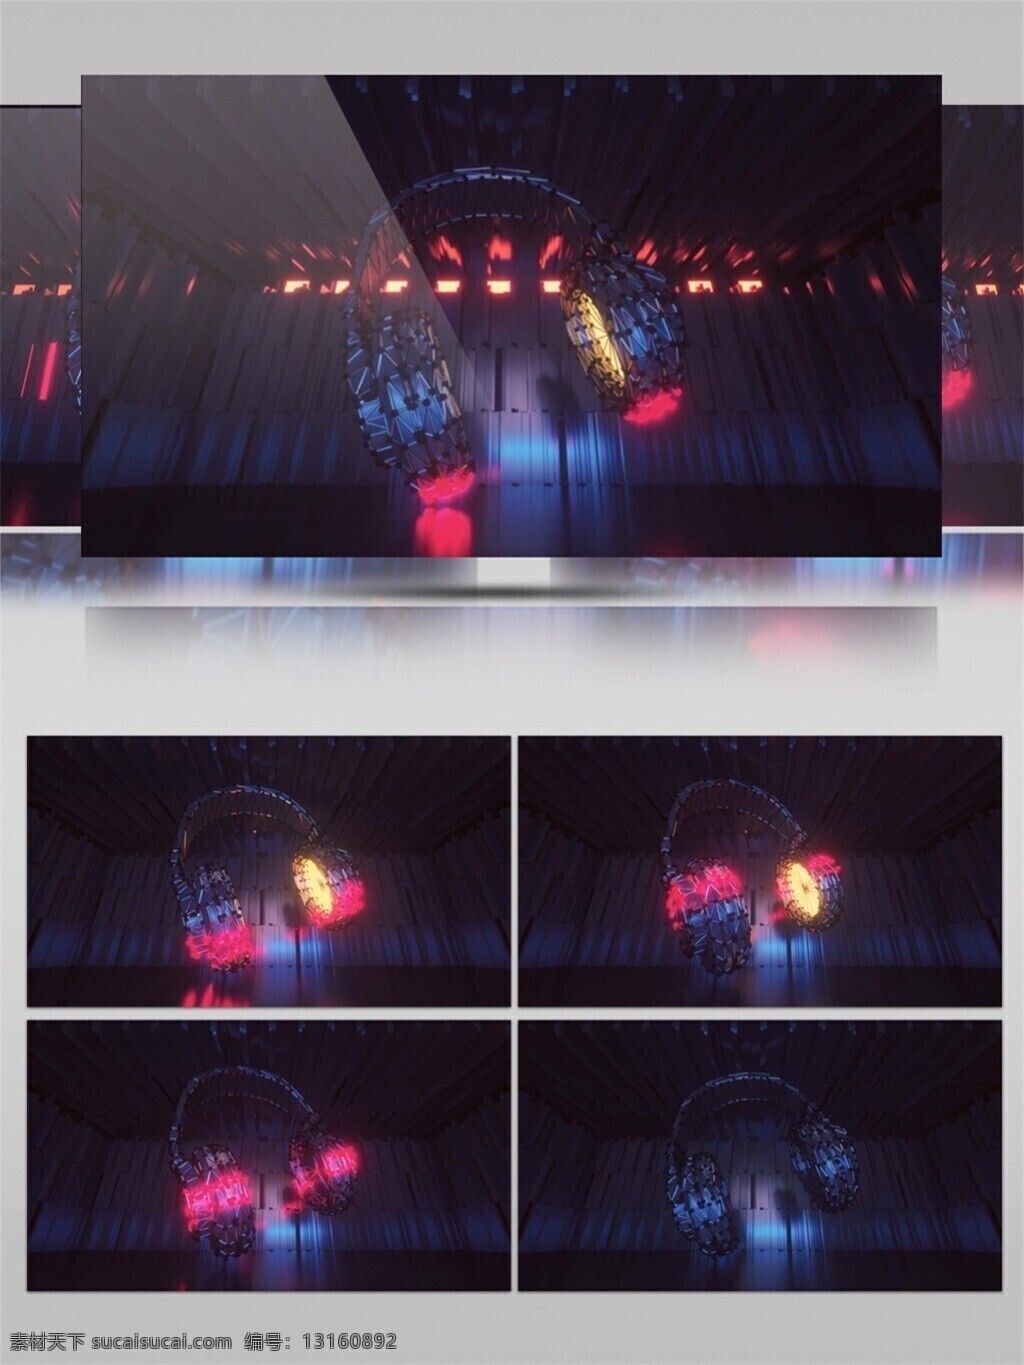 蓝色 星光 喷泉 视频 led 闪烁 灯光 光束 唯美背景素材 舞台背景素材